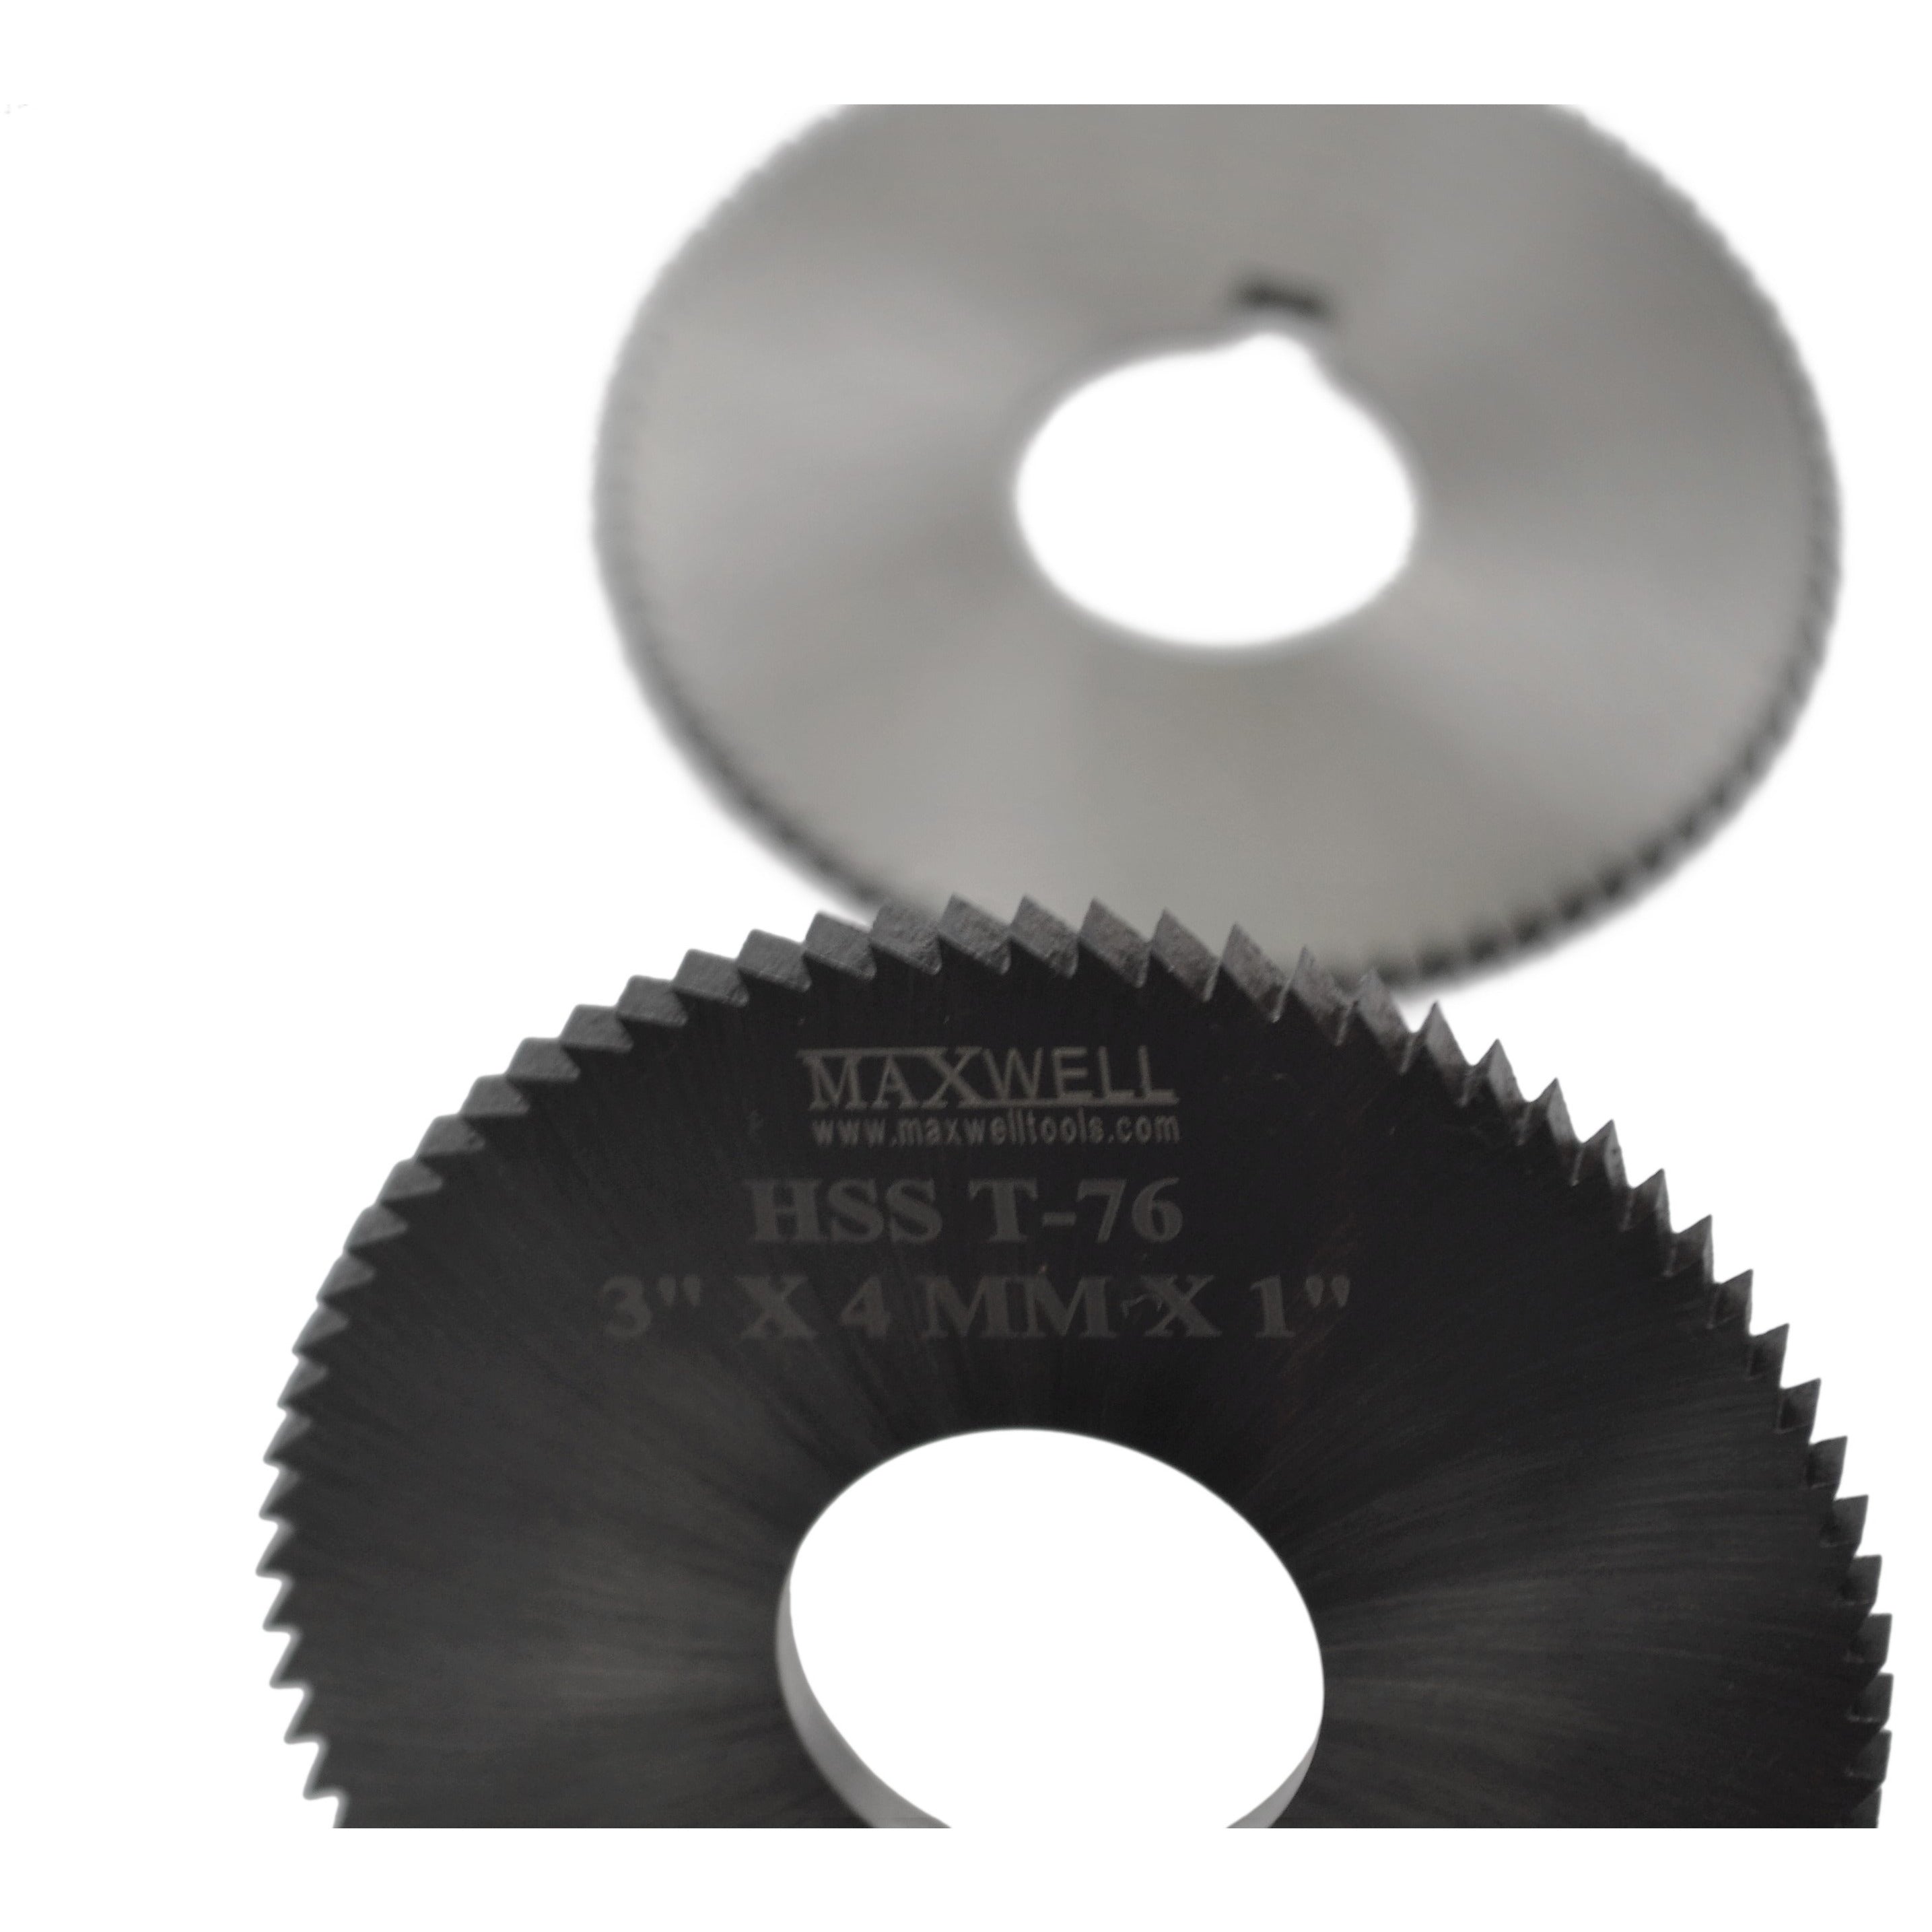 maxwell HSS milling slotting slitting saw cutter 3"x4mmx1" CNC metal work industria